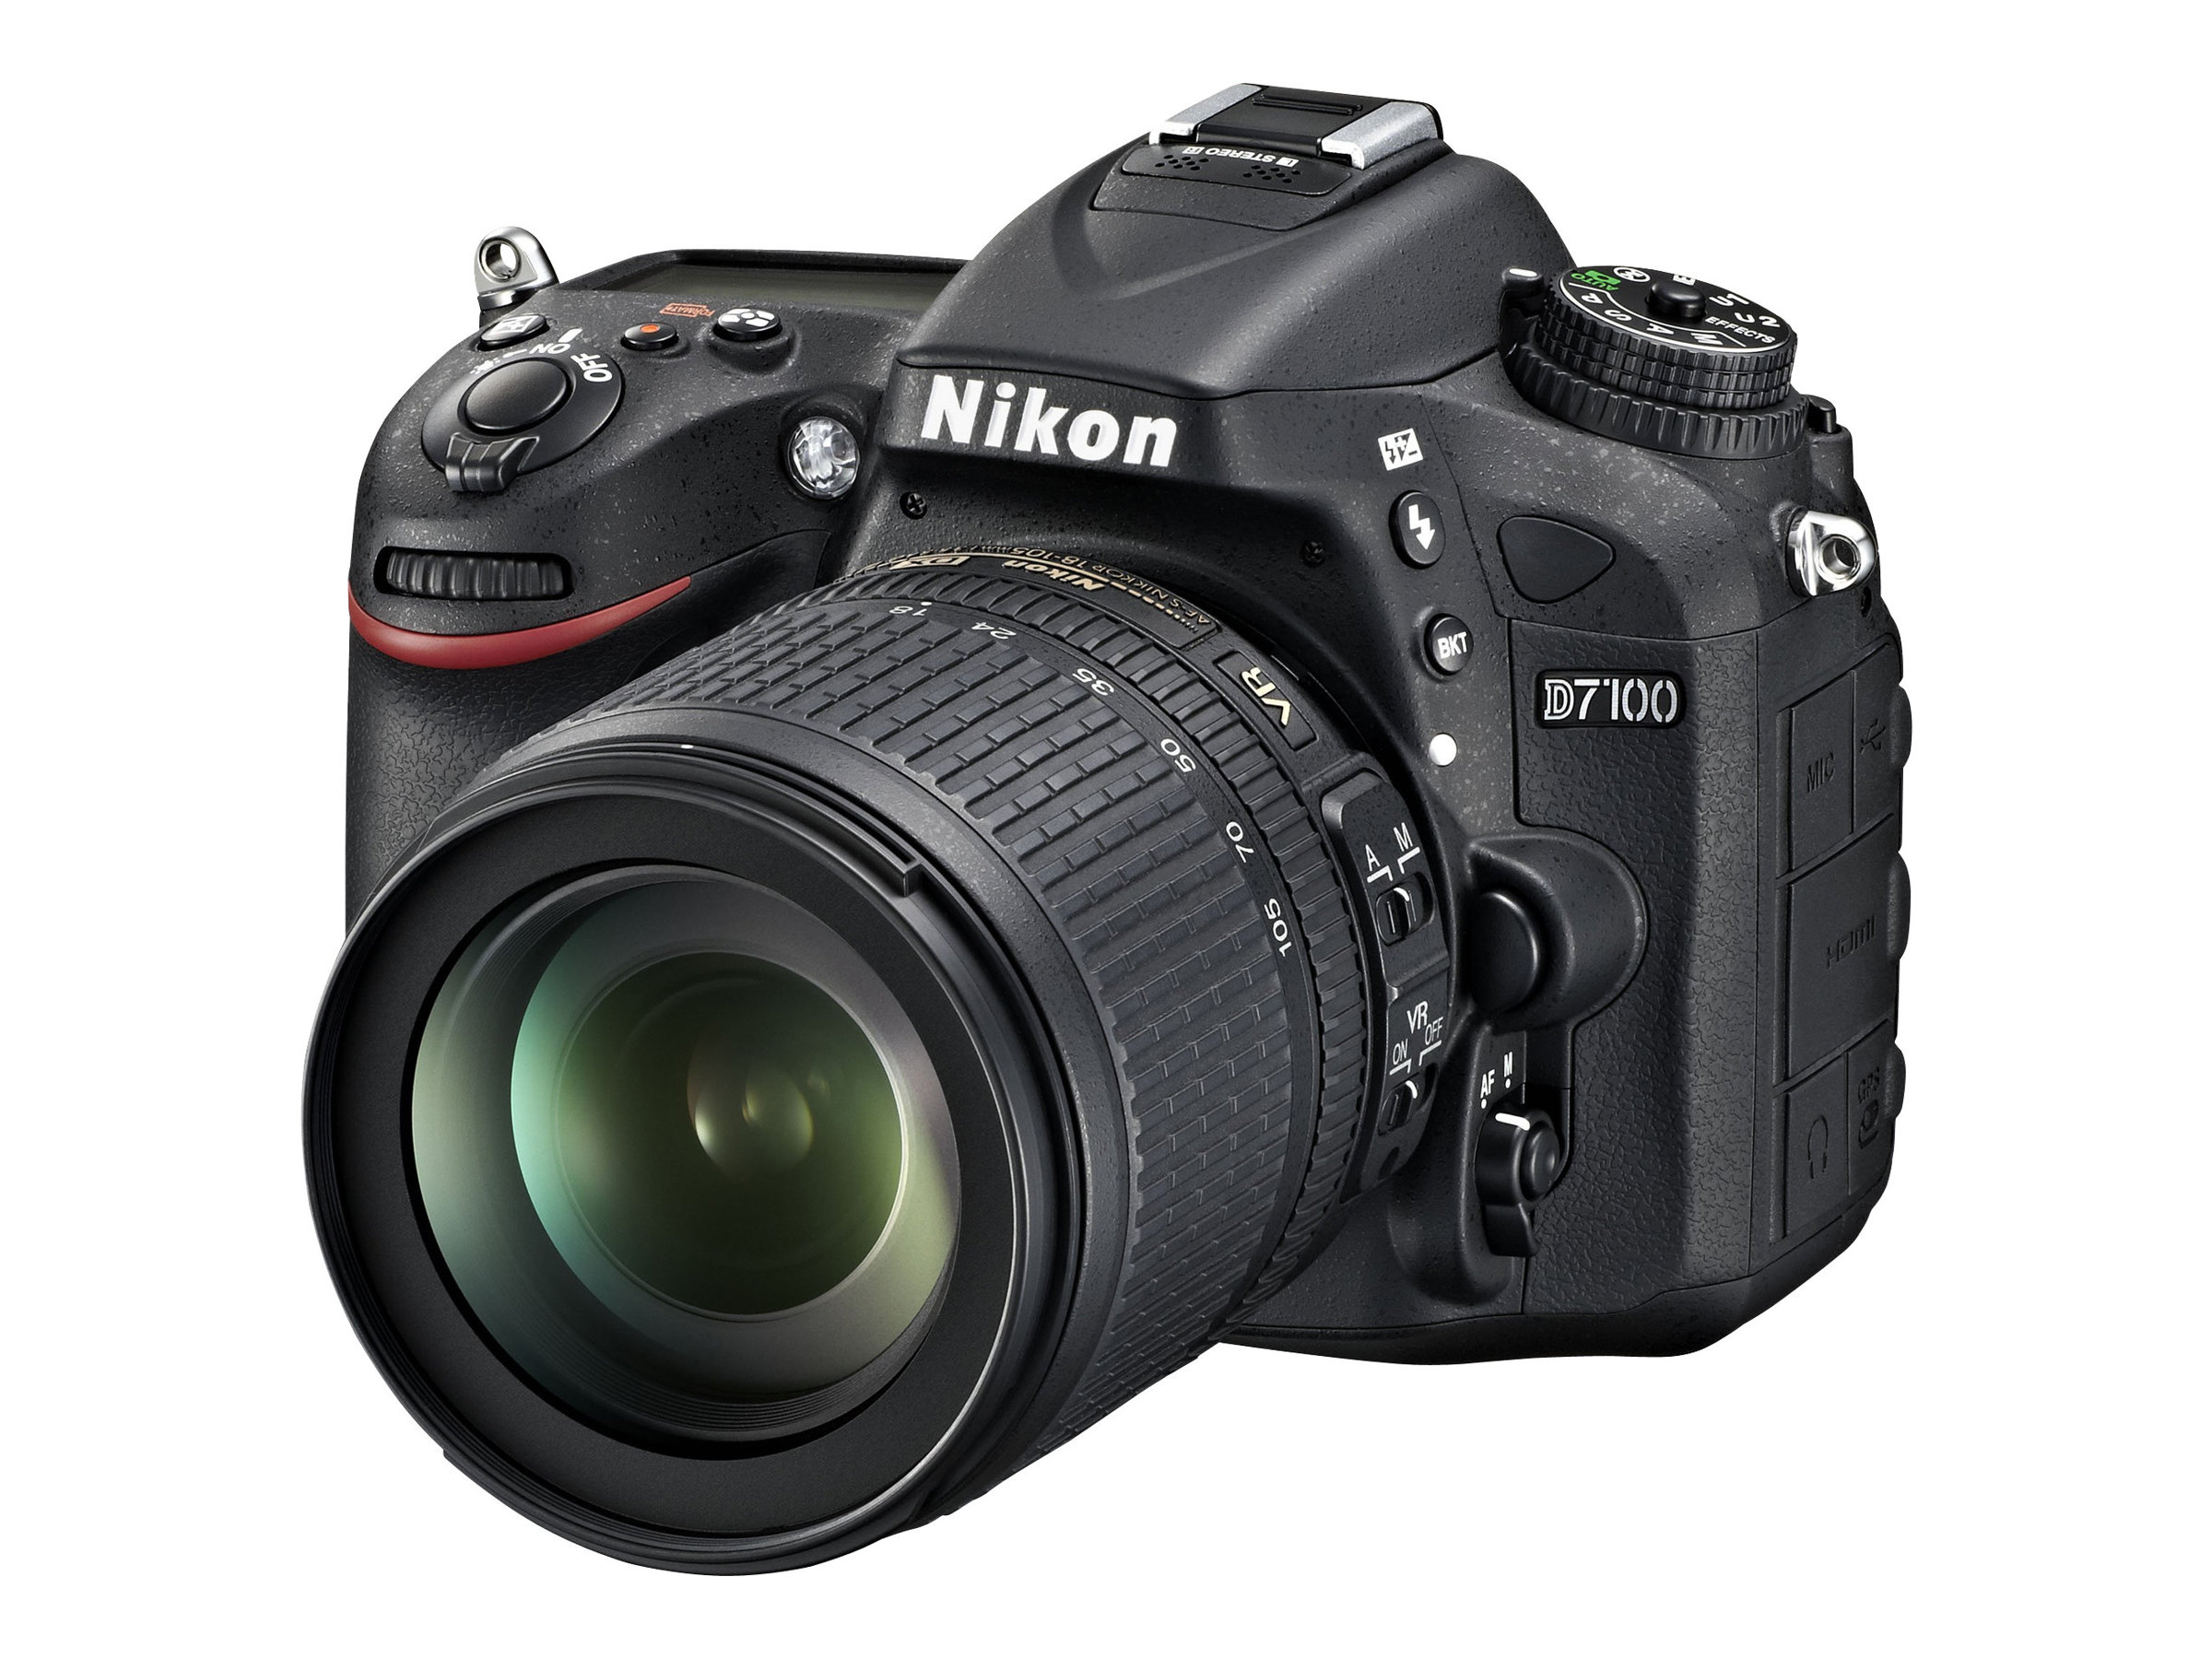 Nikon D7100 - Digital camera - SLR - 24.1 MP - APS-C - 7.8x optical zoom AF-S DX 18-140mm and AF-S 55-300mm VR lenses - black - image 1 of 5